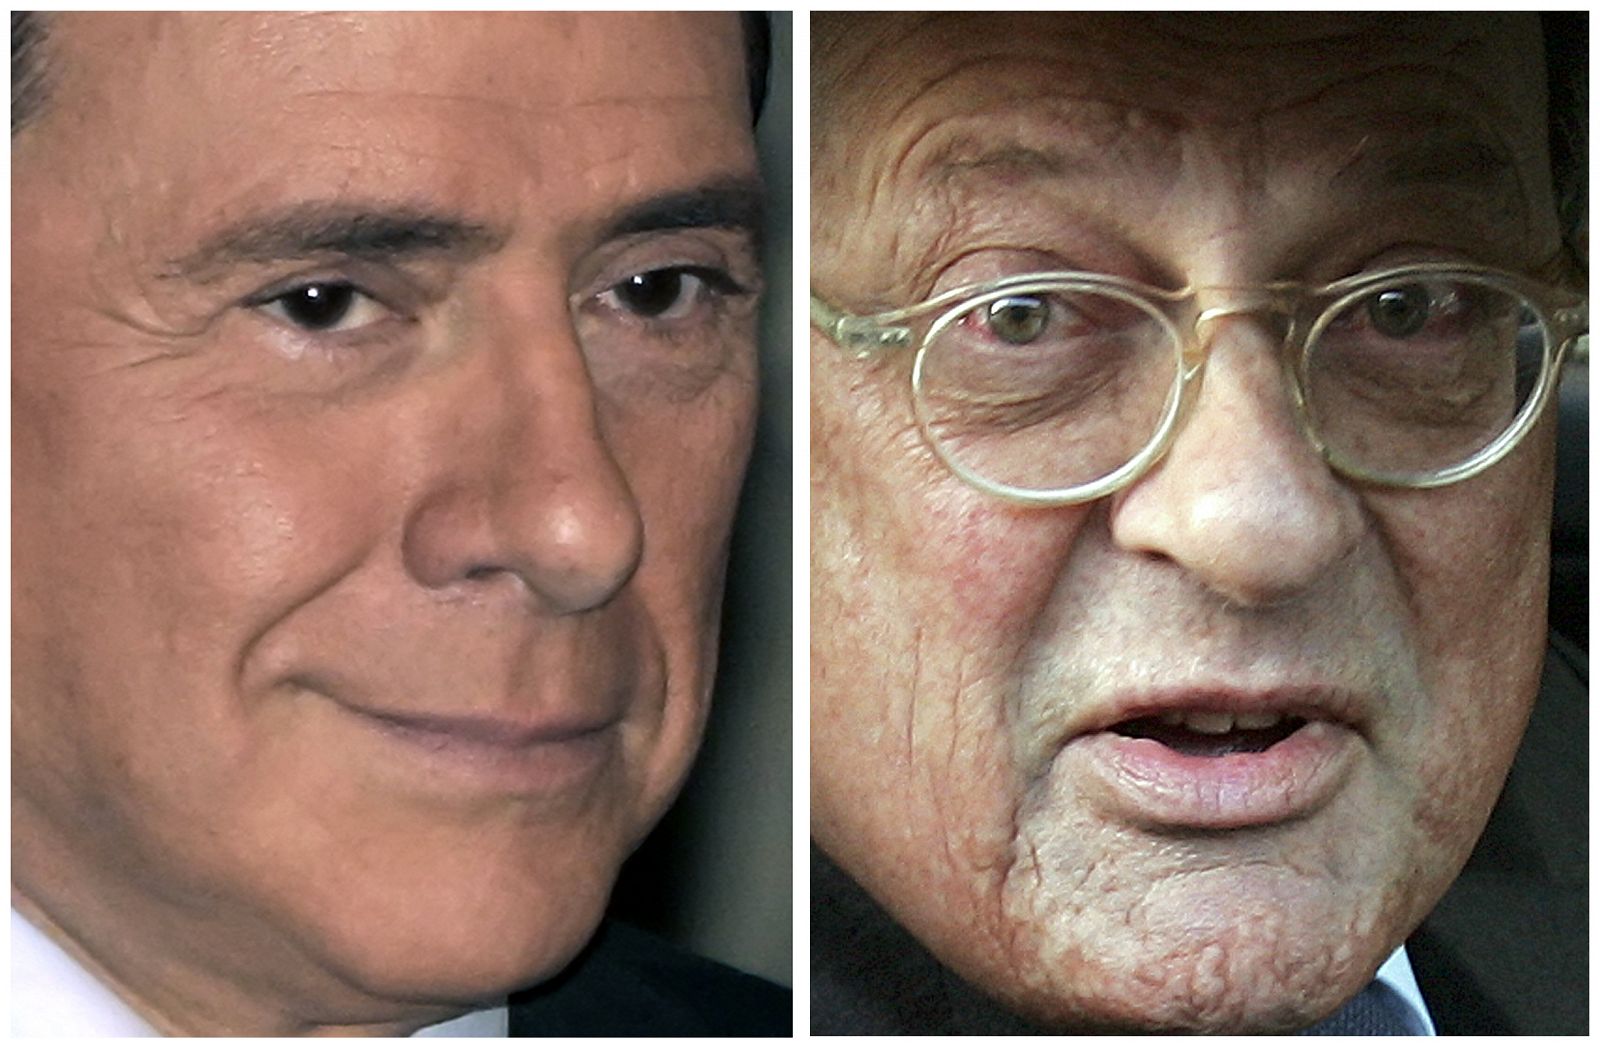 El abogado David Mills mintió para darle impunidad a Berlusconi